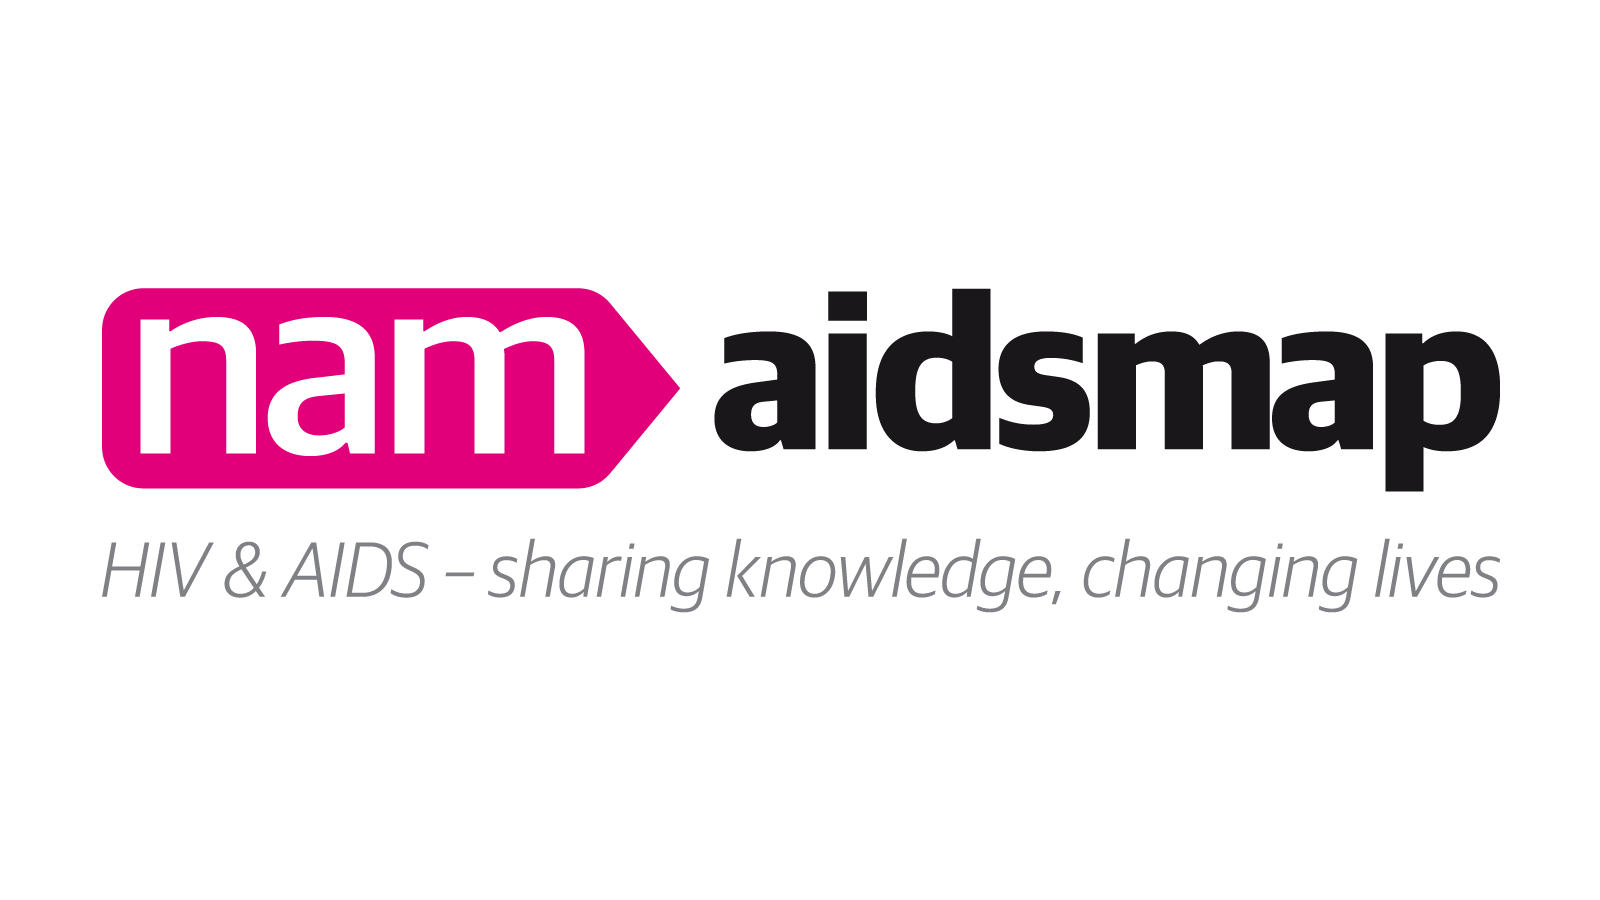 www.aidsmap.com